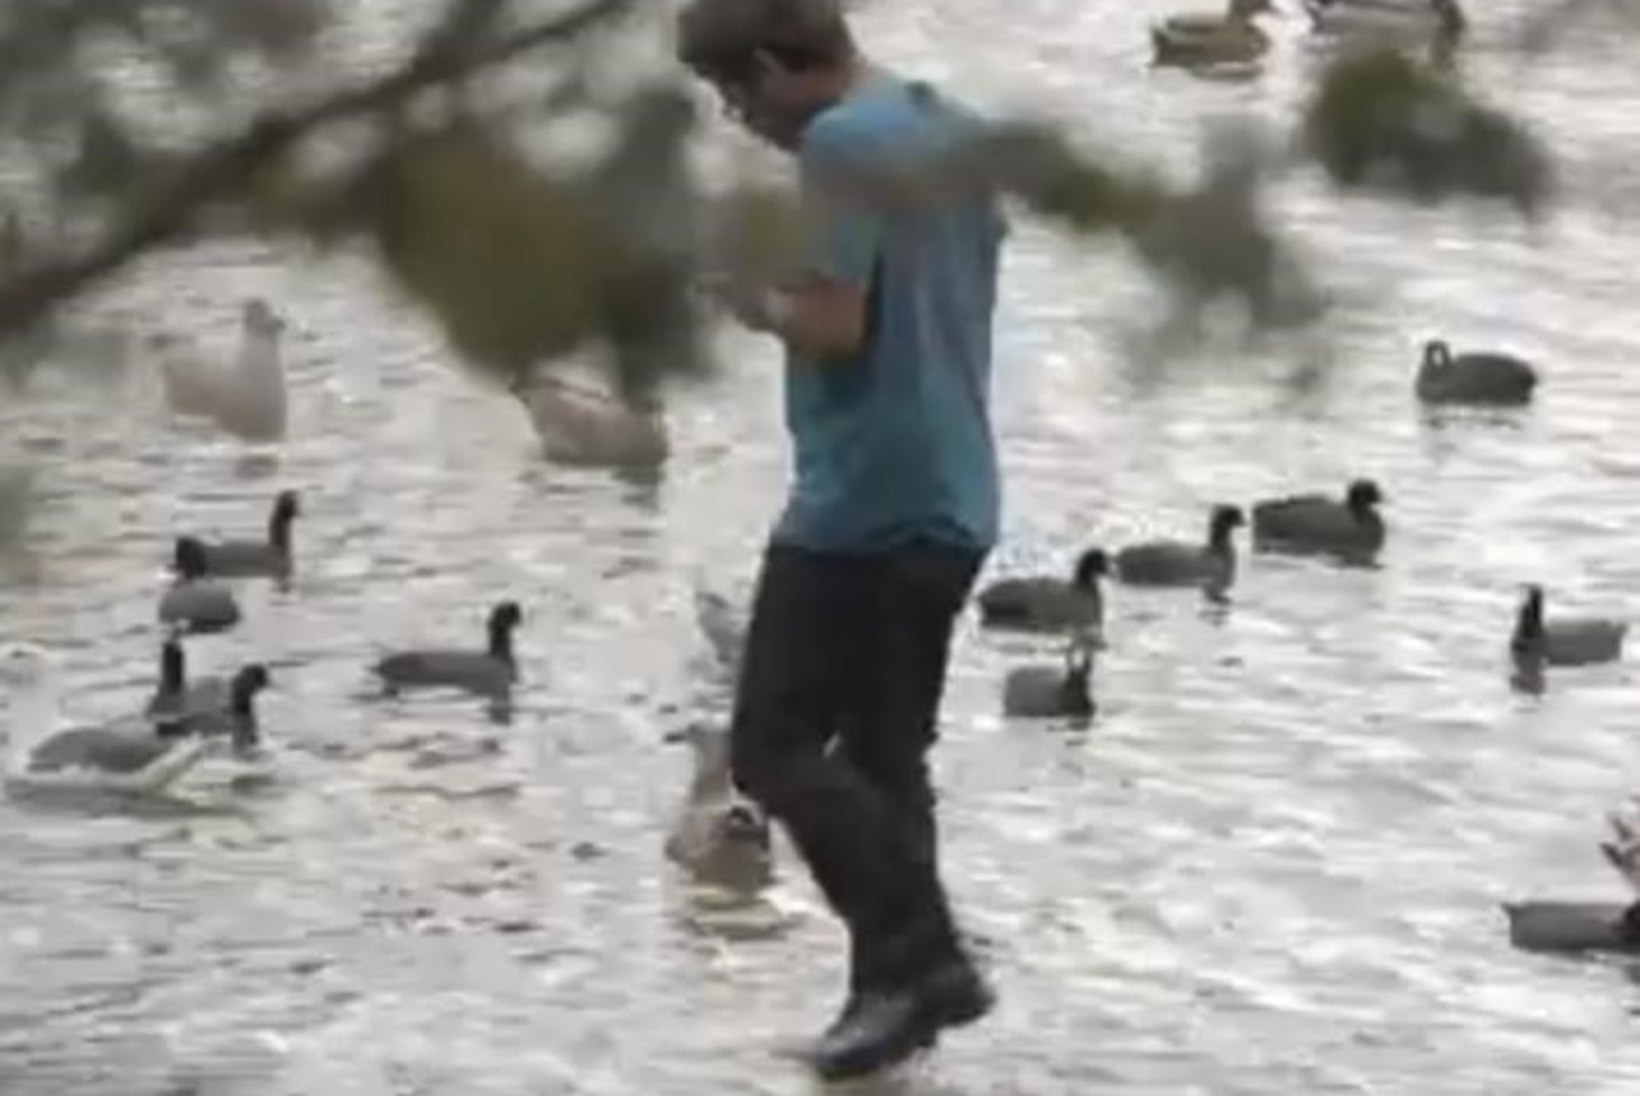 VIDEO: kas see mees oskab tõesti vee peal kõndida?